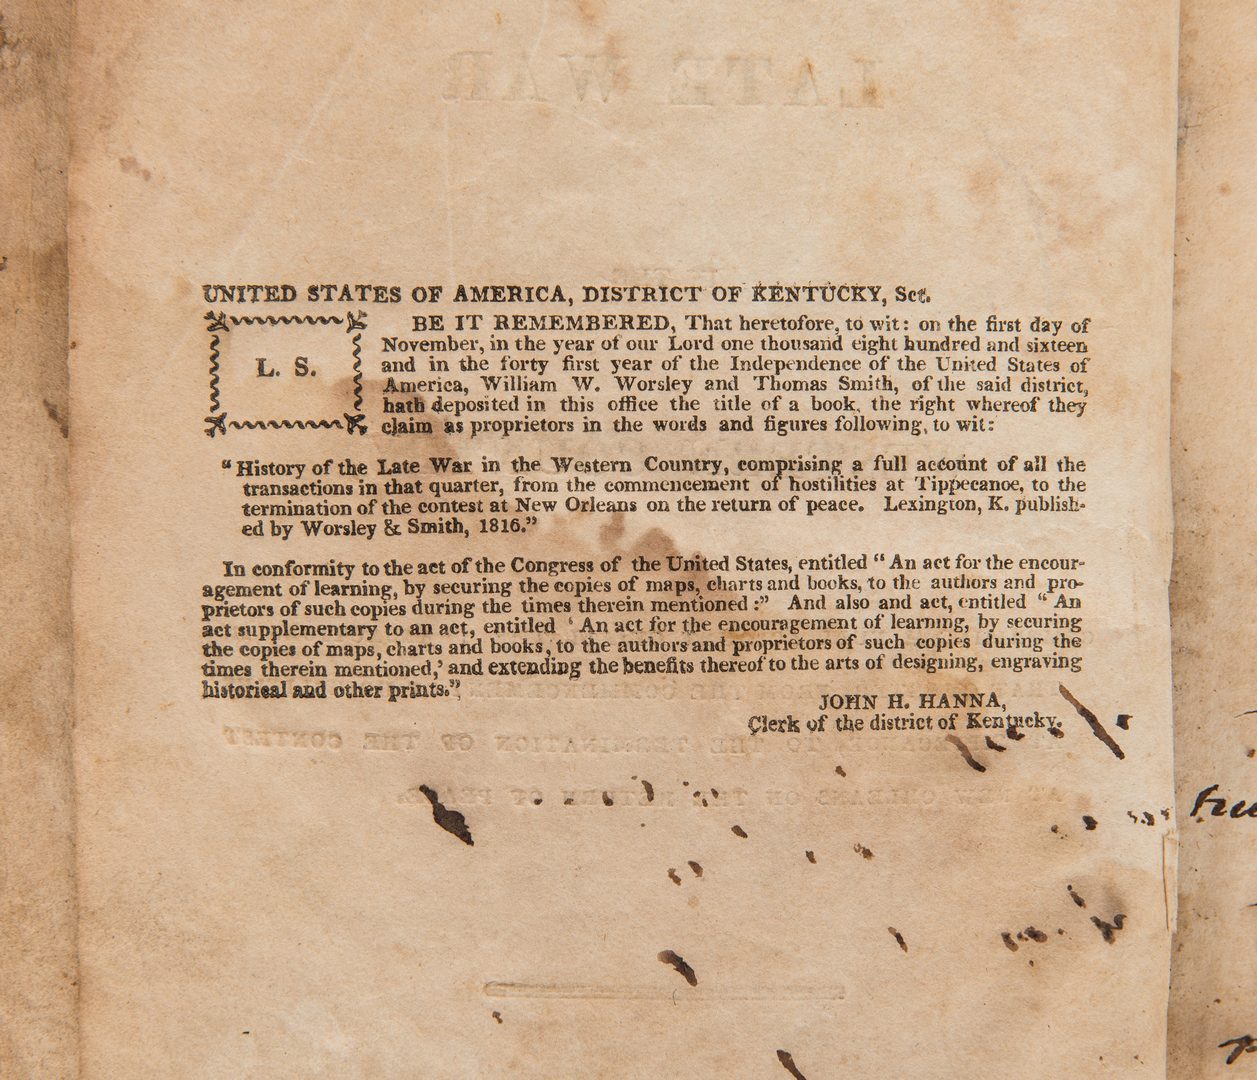 Lot 172: 2 War Books: History, 1816, and Civil War Tactics, 1862